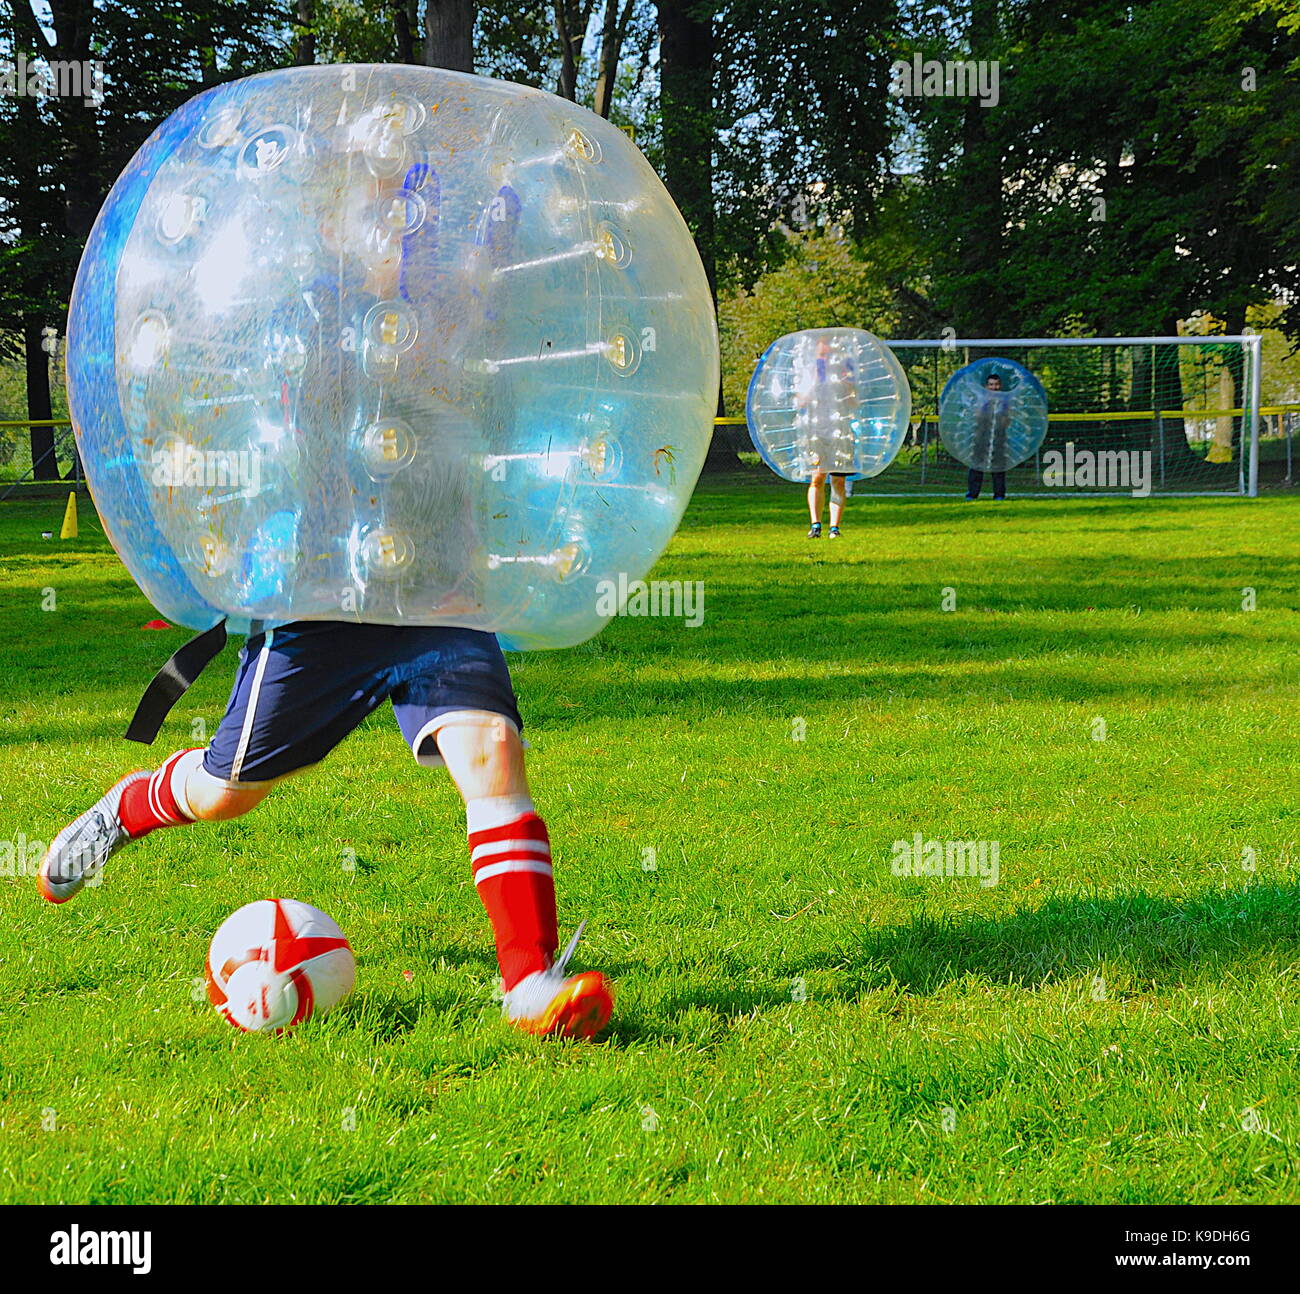 Bubble football immagini e fotografie stock ad alta risoluzione - Alamy